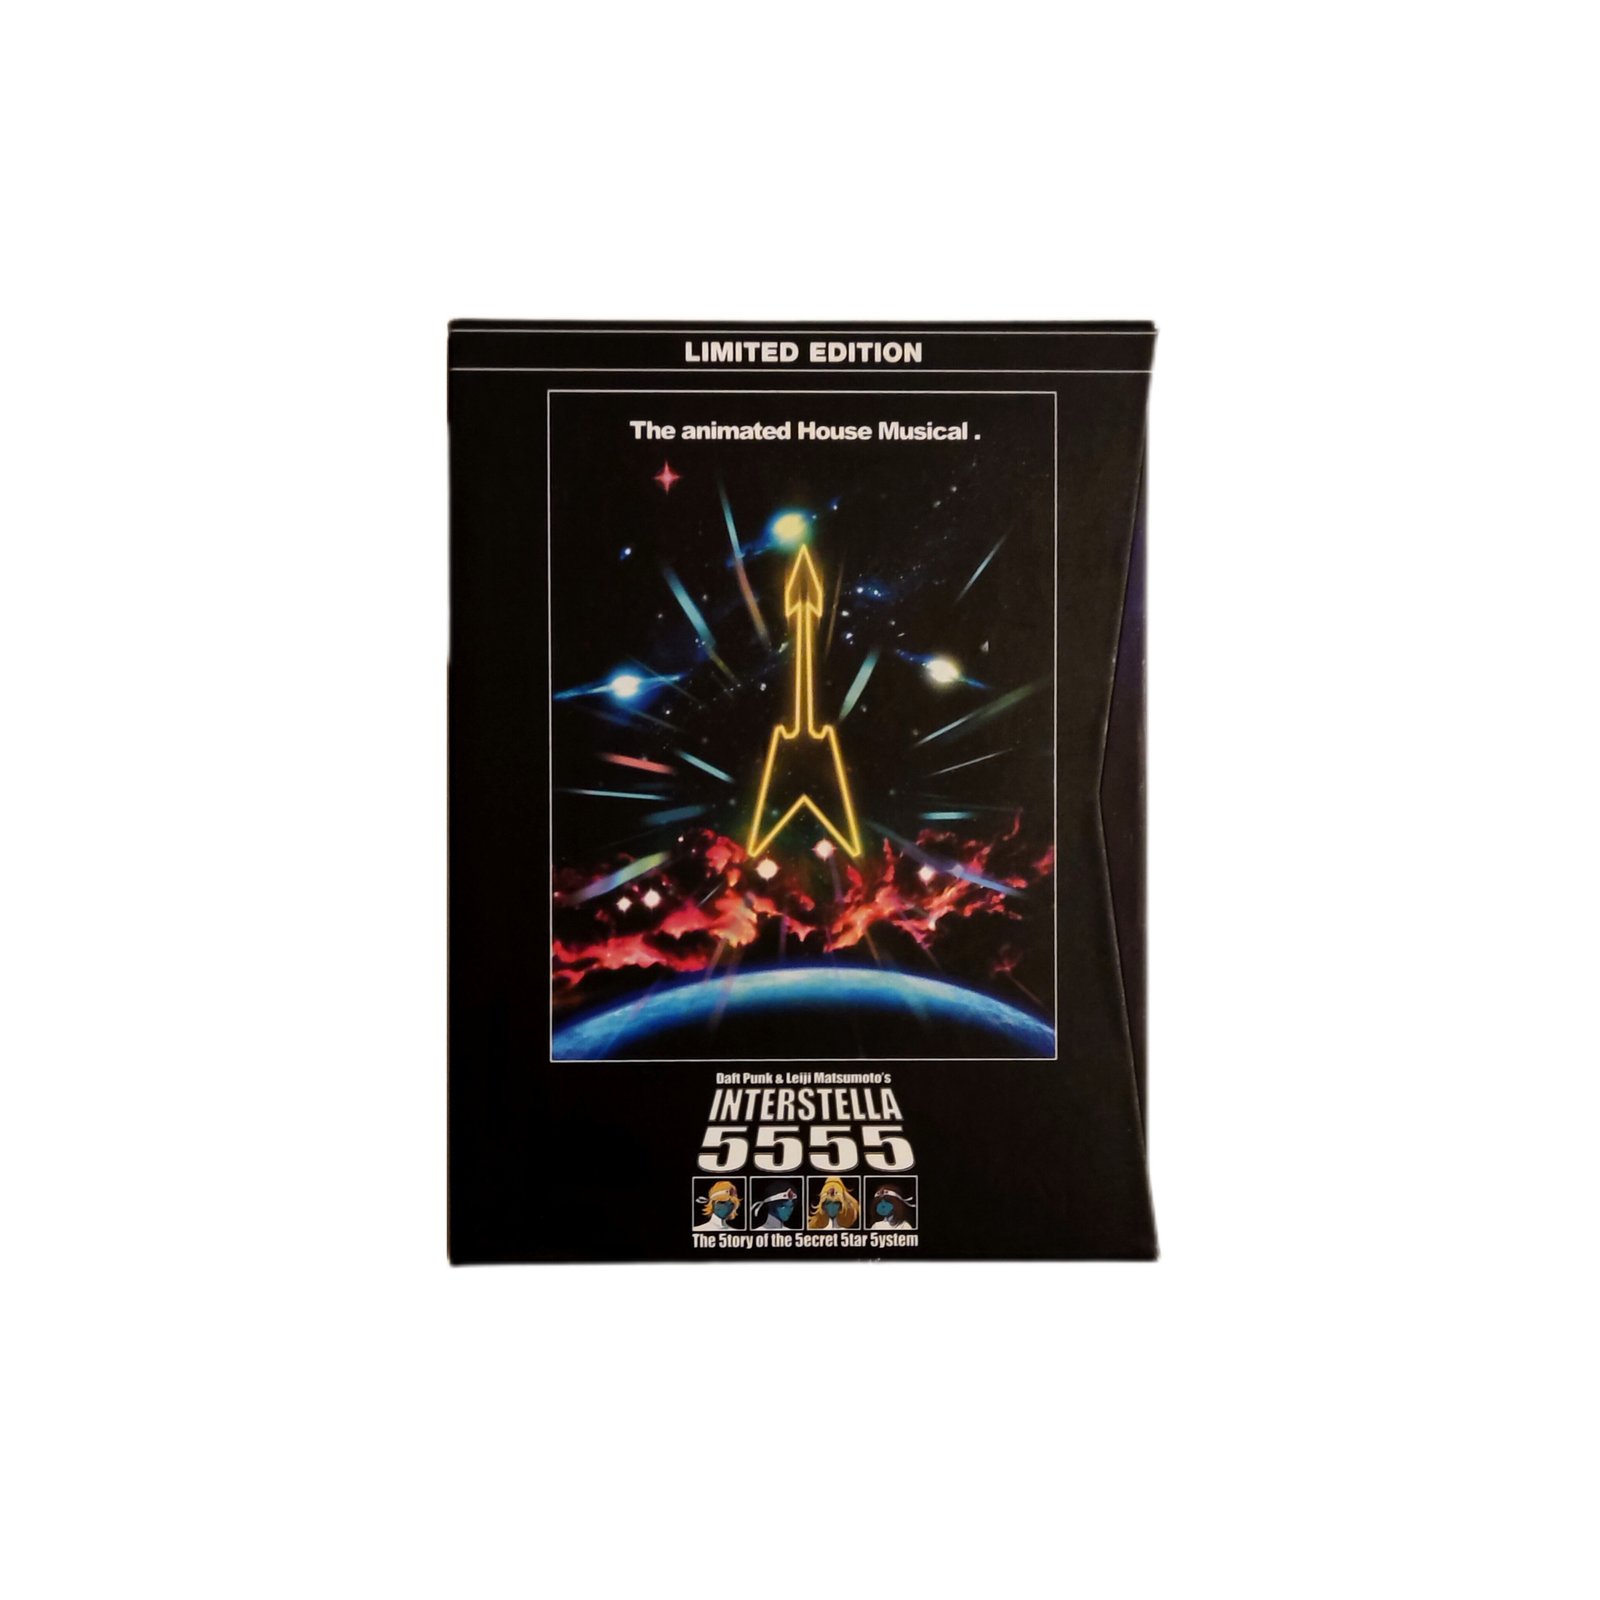 インターステラ5555-The 5tory of the 5ecret 5tar 5ystem-limited edition DVD